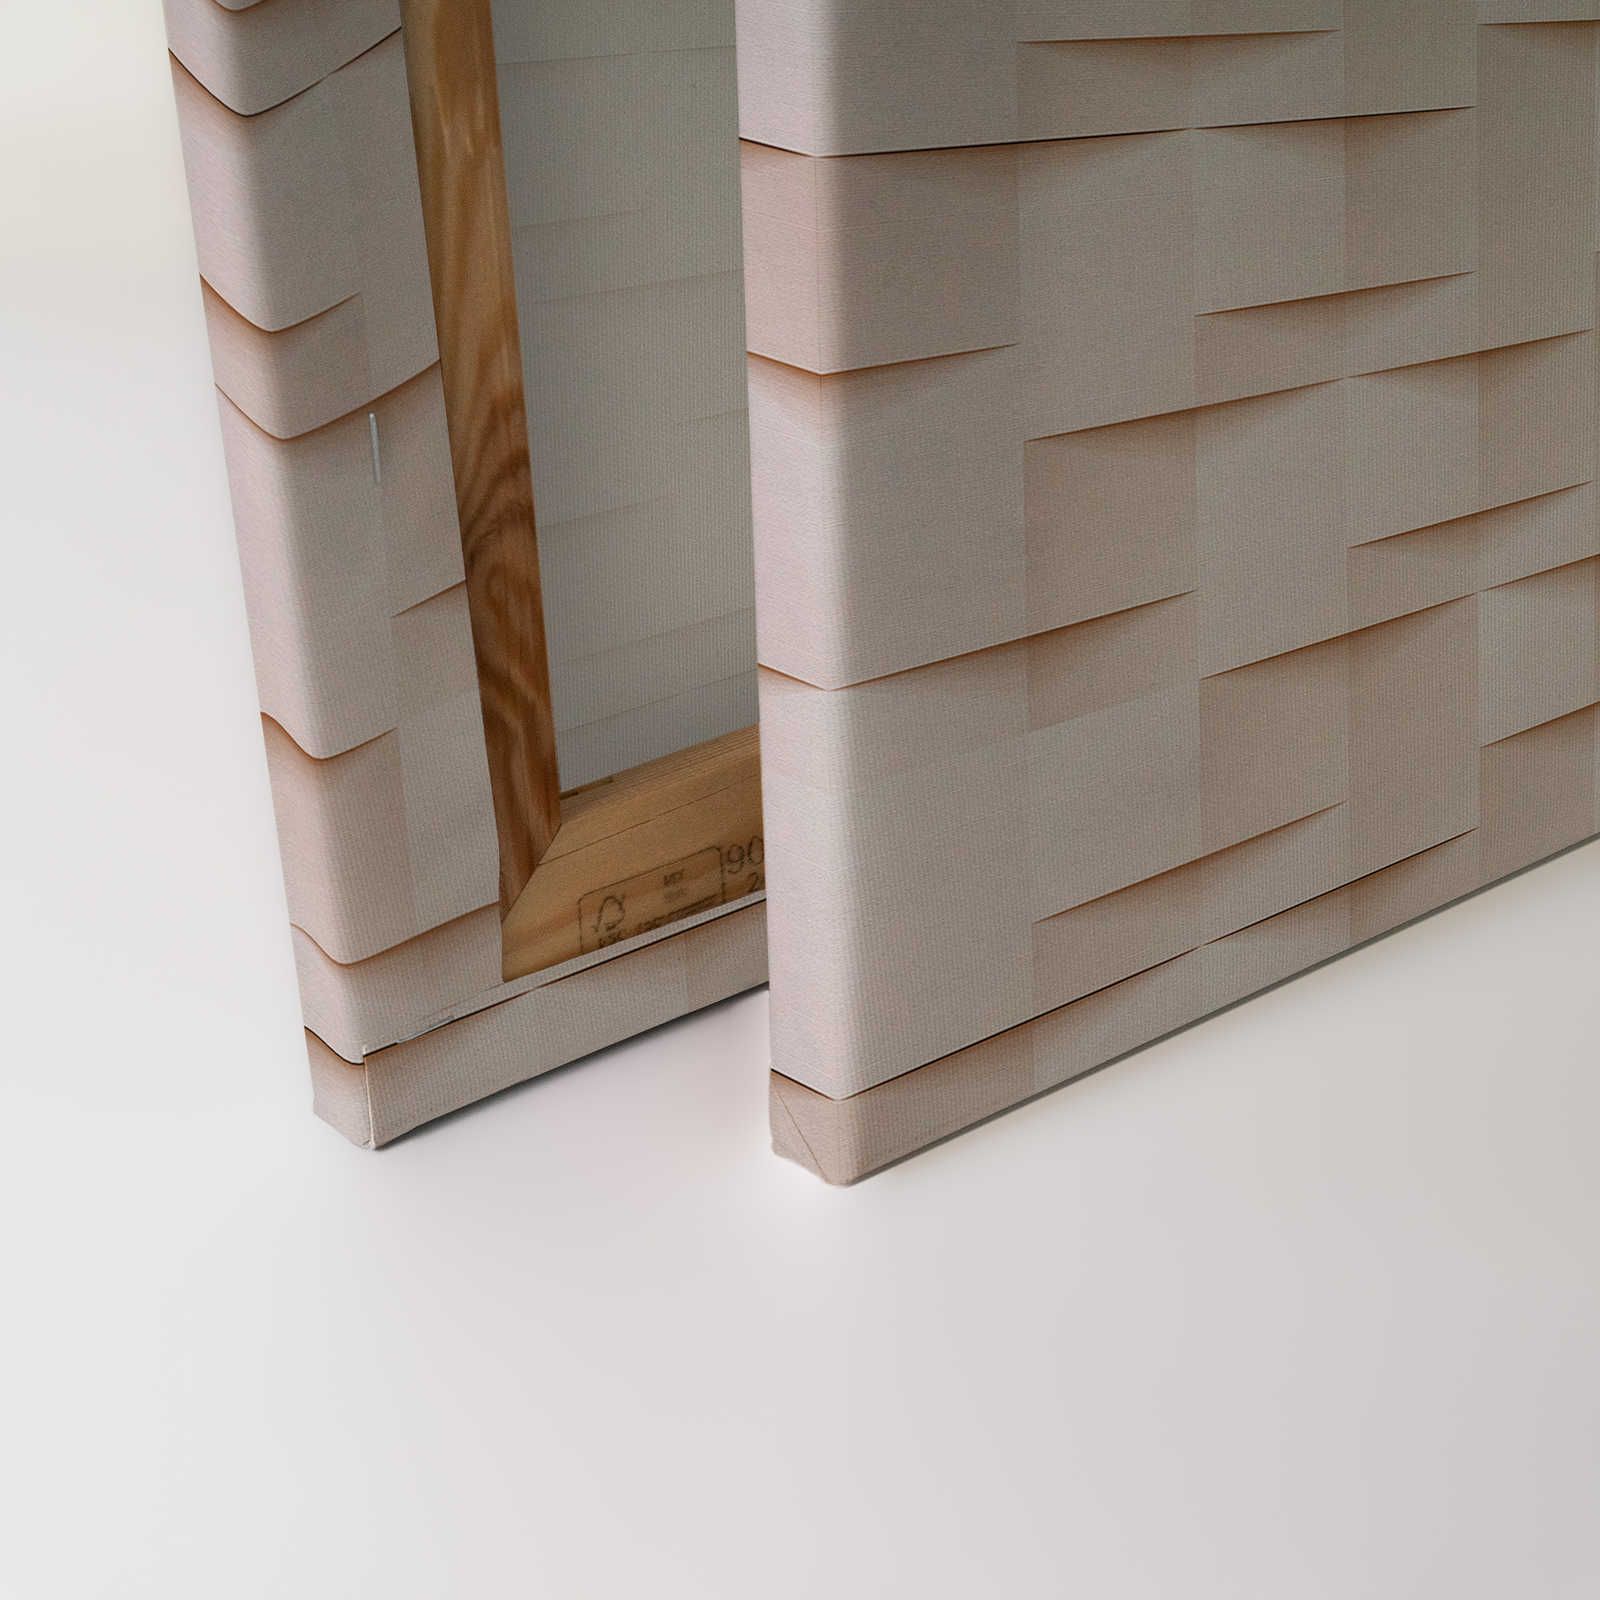             Casa de papel 1 - Lienzo pintura estructura 3D papel origami pliegues - 0,90 m x 0,60 m
        